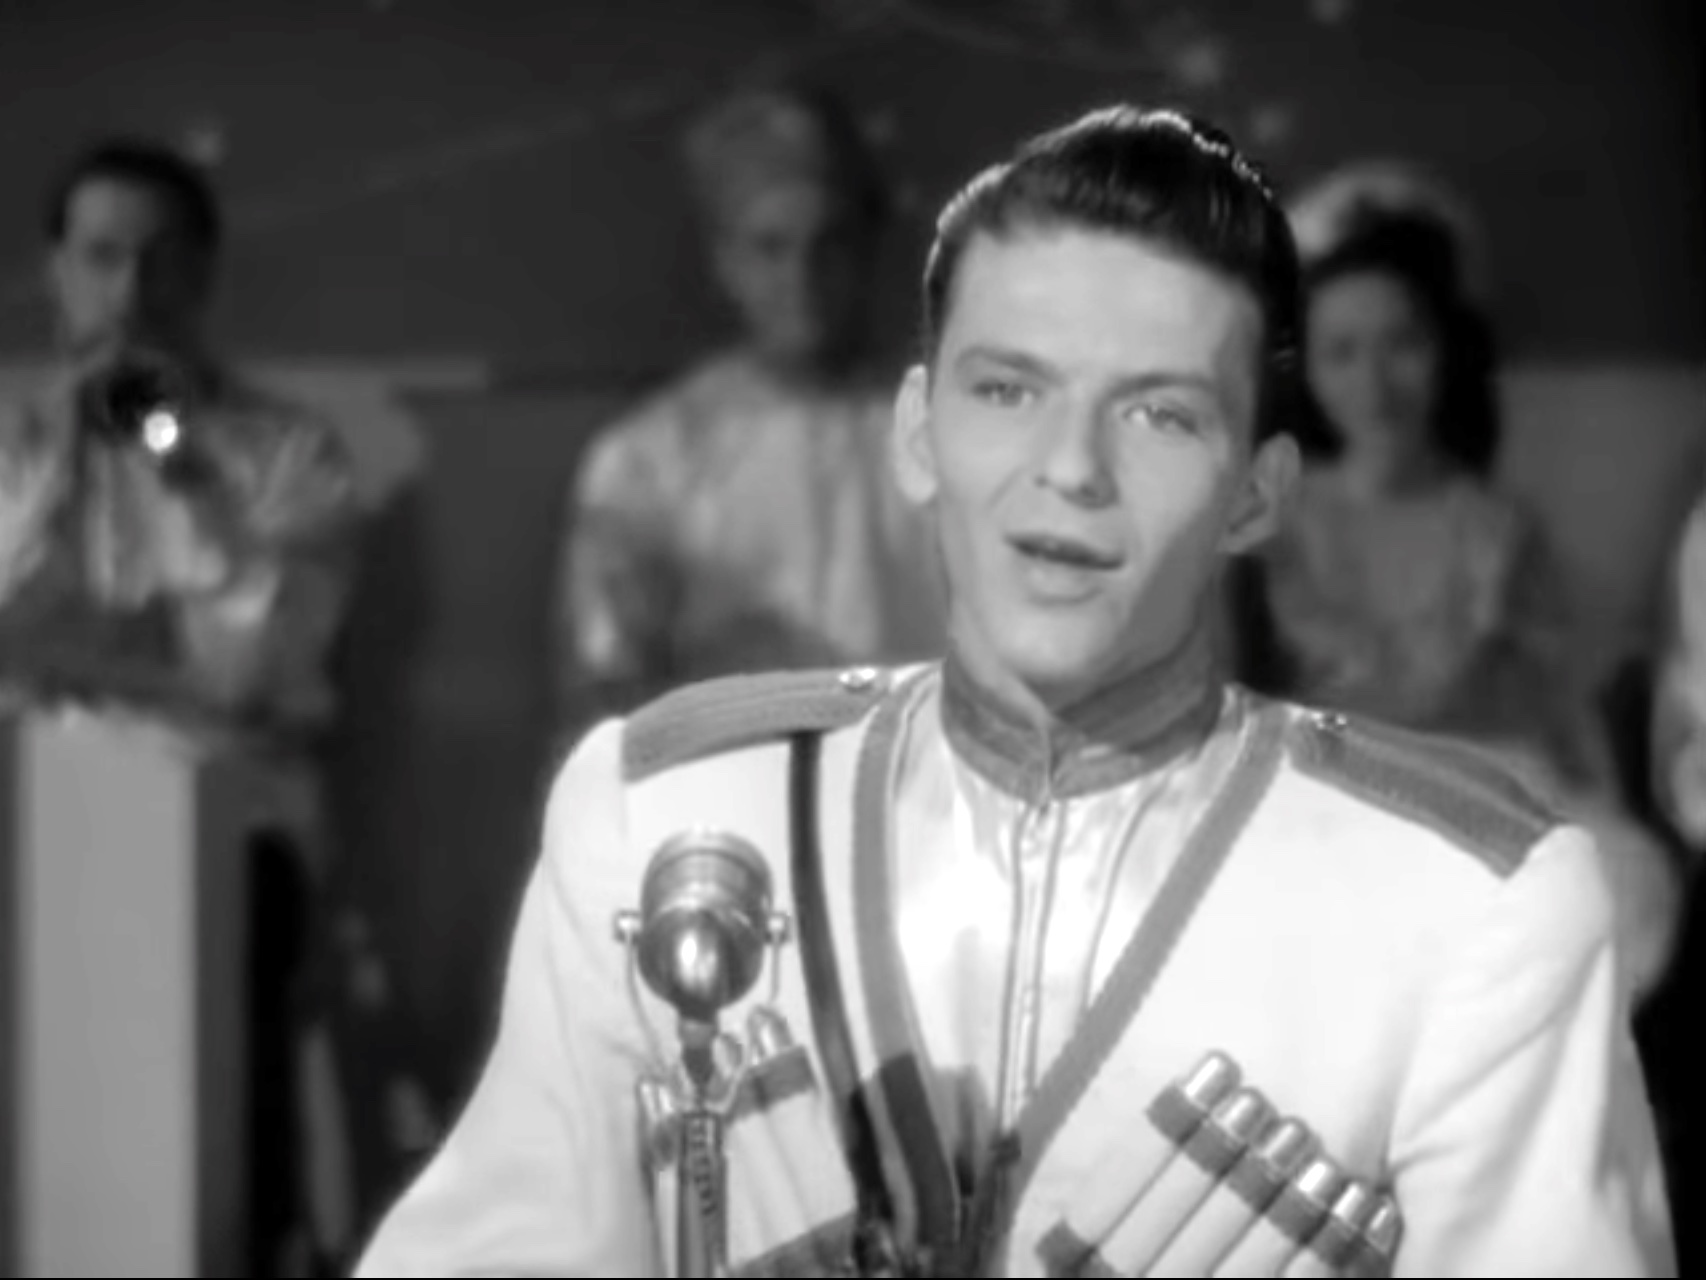 Poor You lyrics - music by Burton Lane, lyrics by E.Y. Harburg, sung in Ship Ahoy by Frank Sinatra